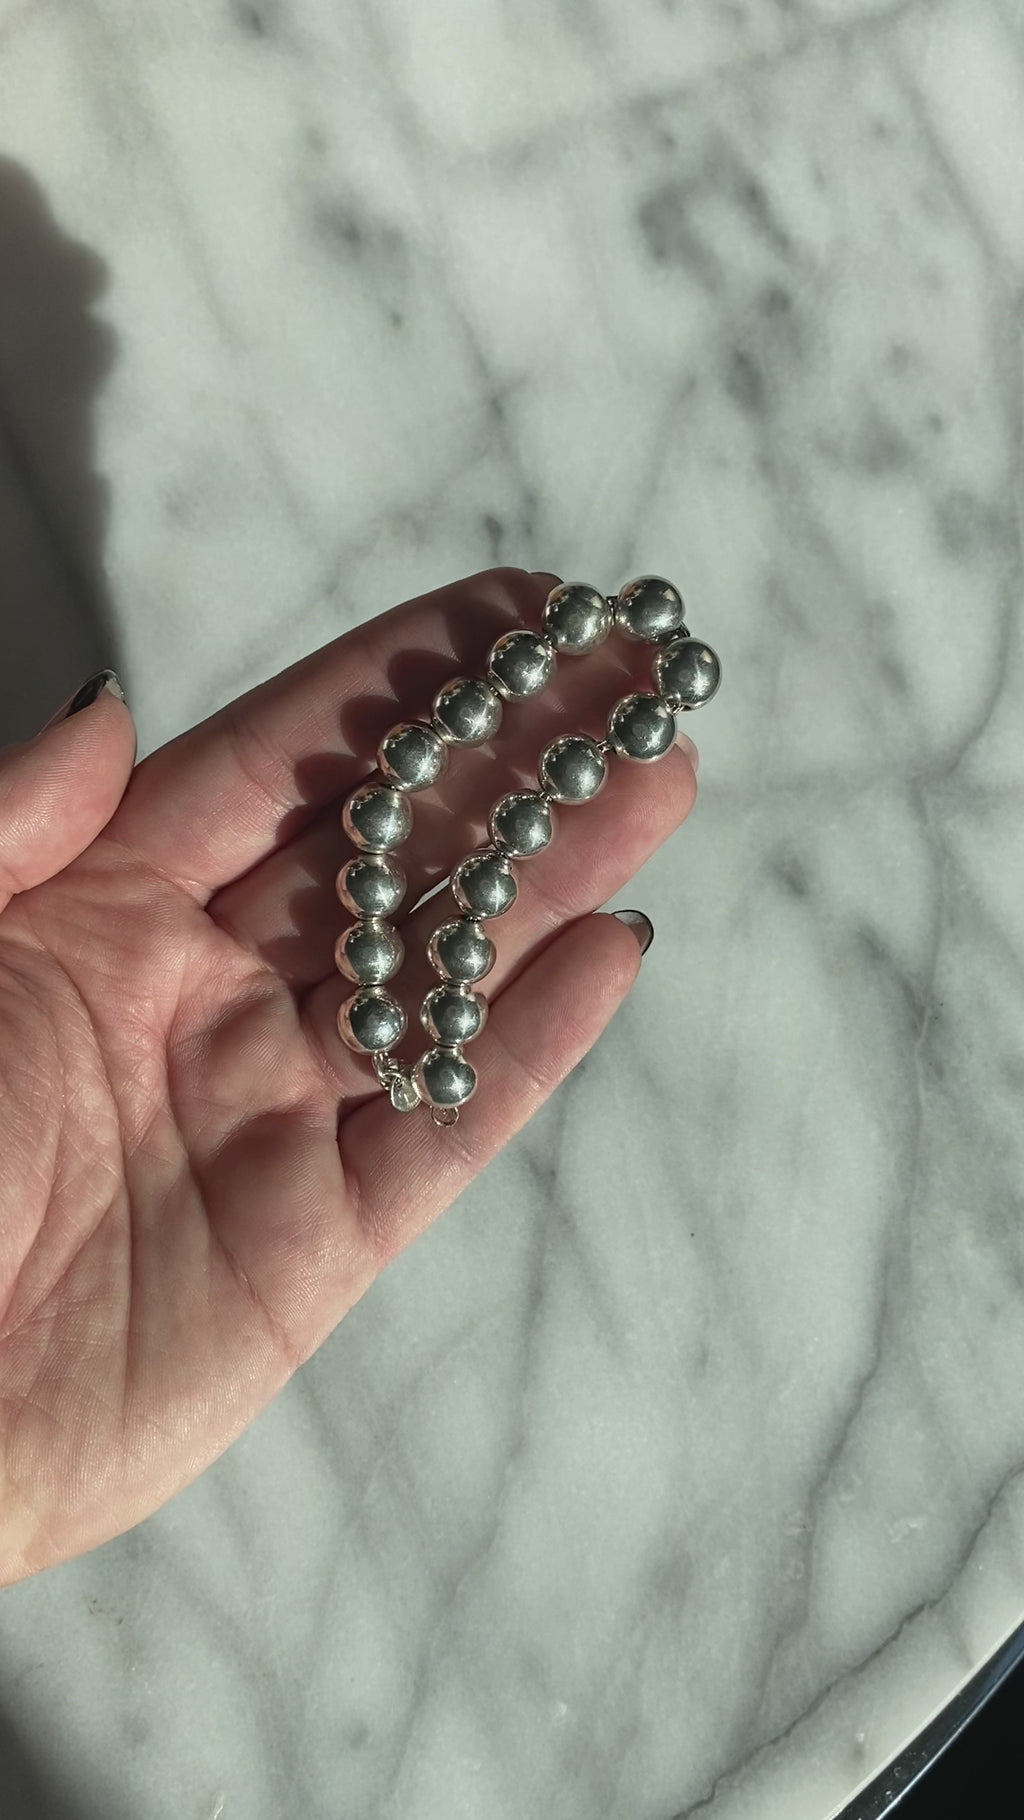 Tiffany Hardwear Ball Bracelet in Silver, 10 mm, Size: 7 in.